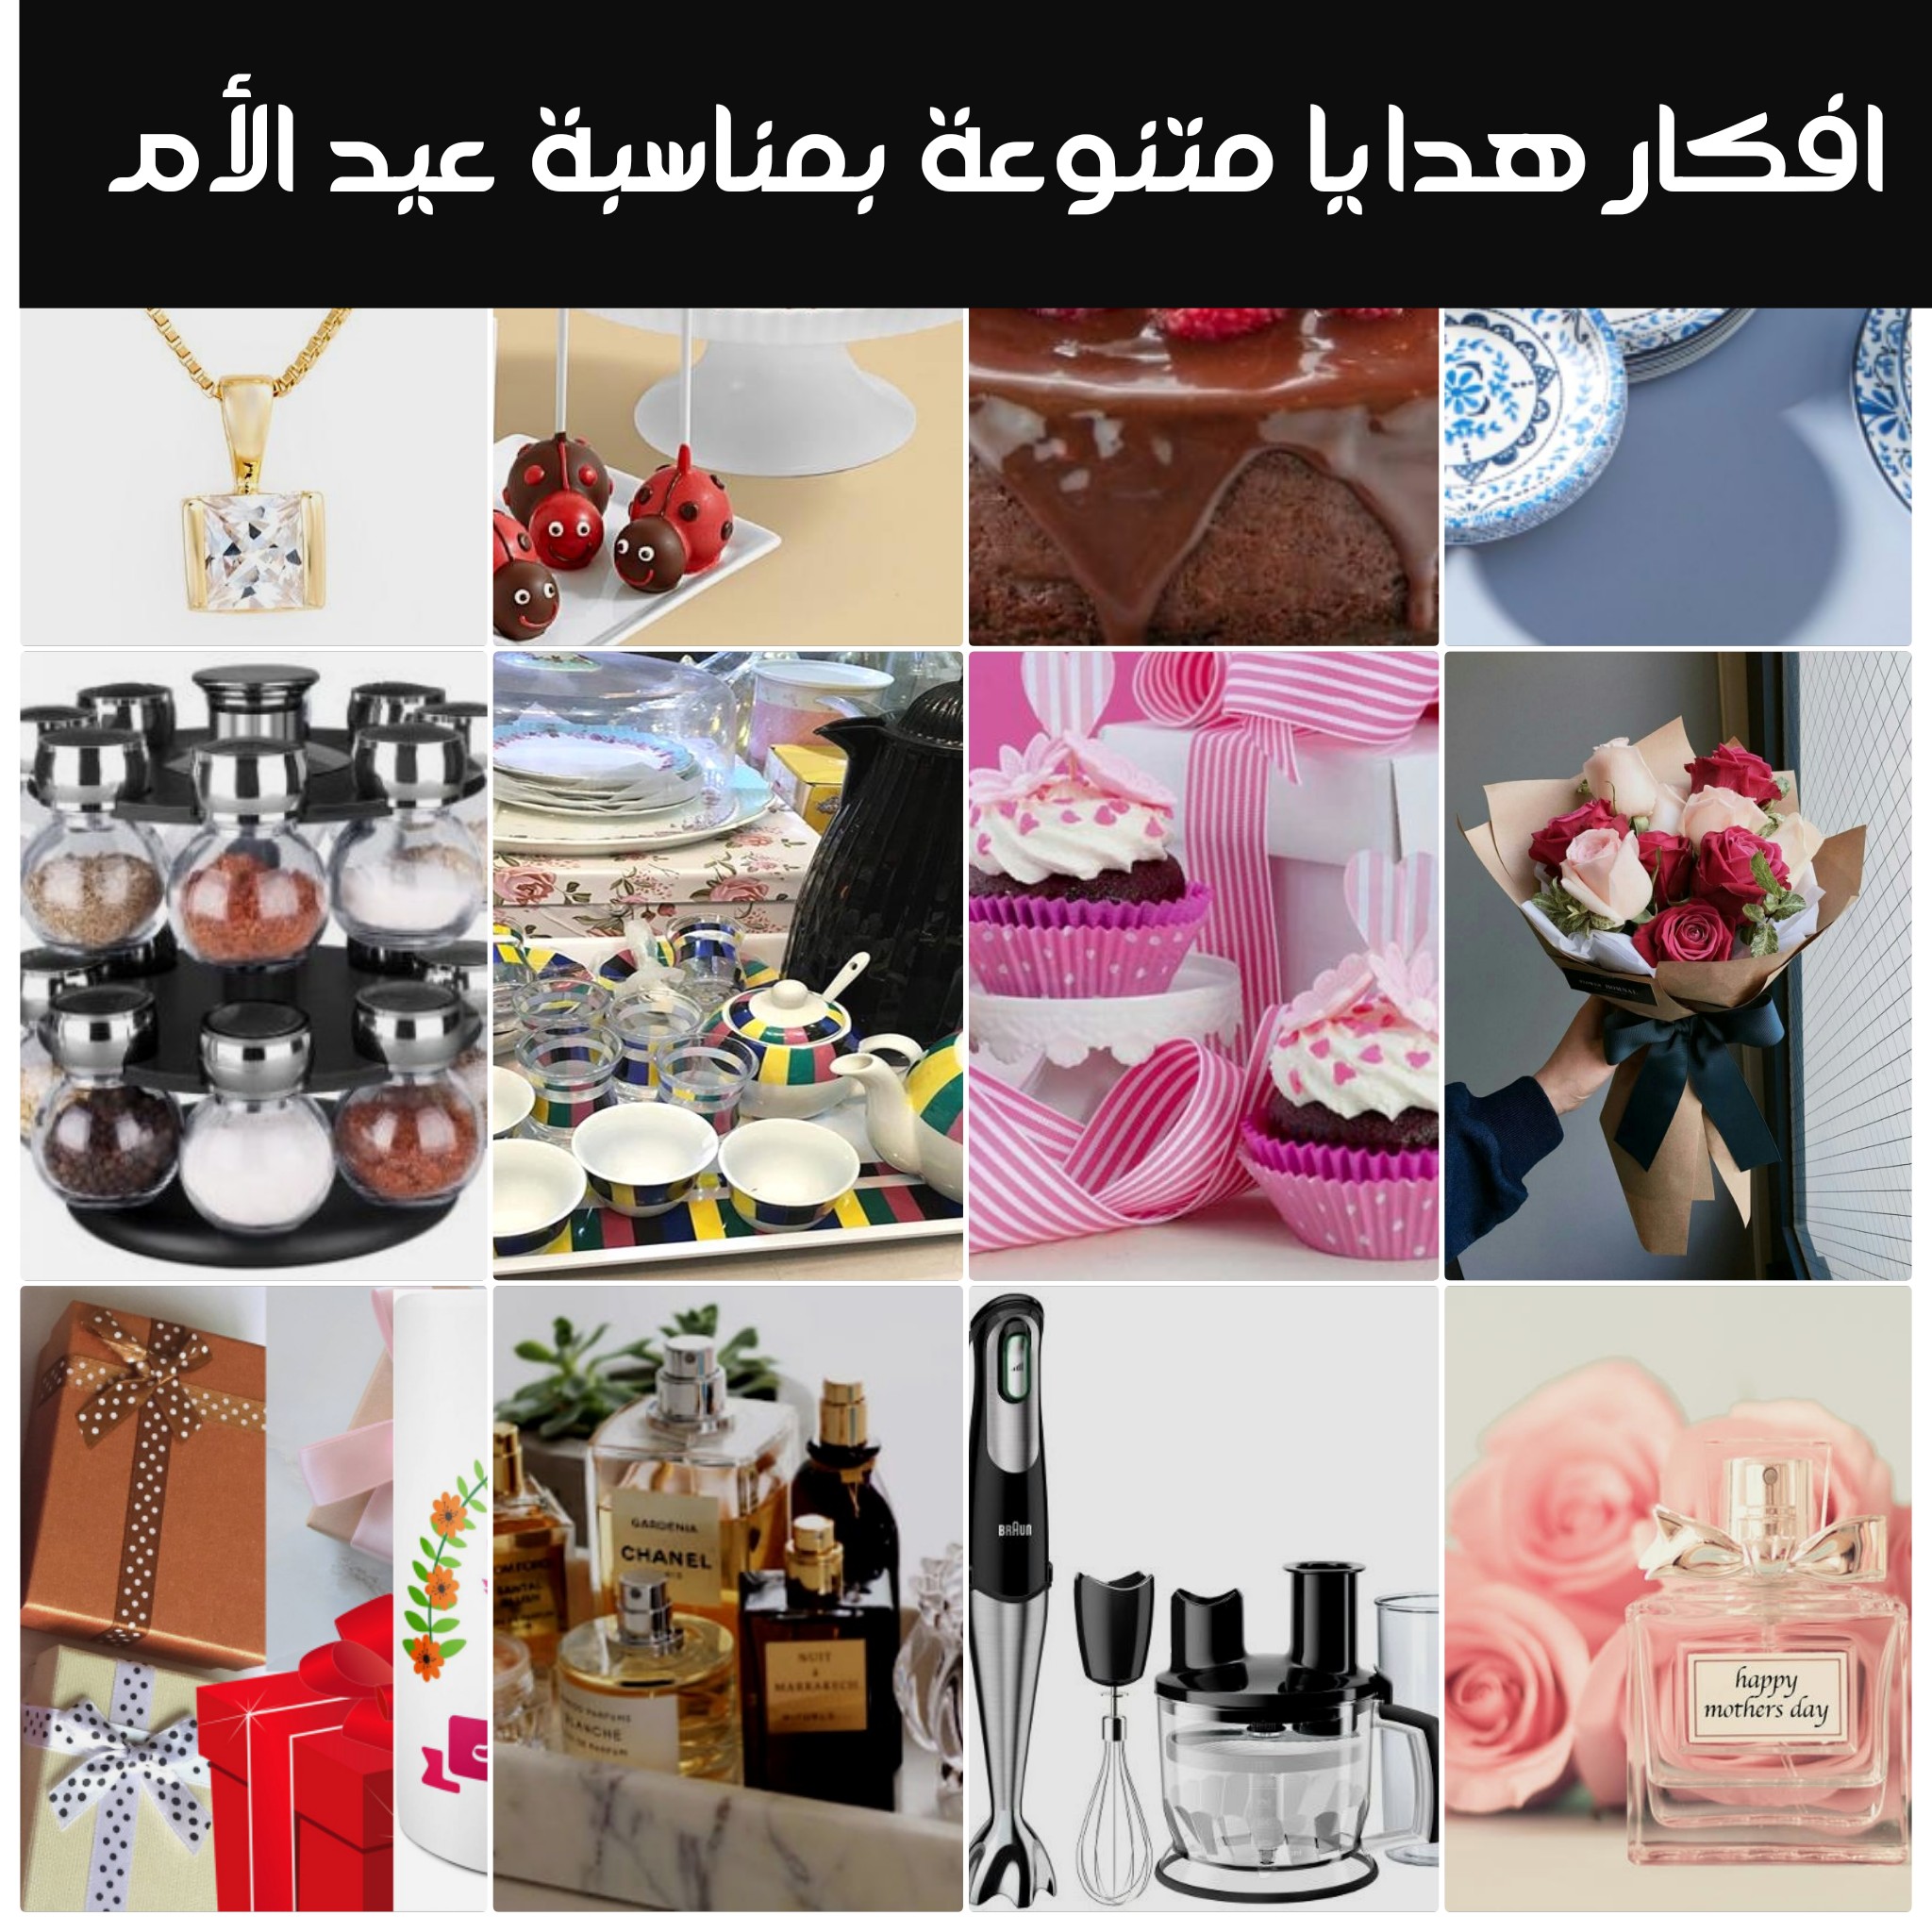 افكار هدايا متنوعة بمناسبة عيد الأم بالصور نبض السعودية